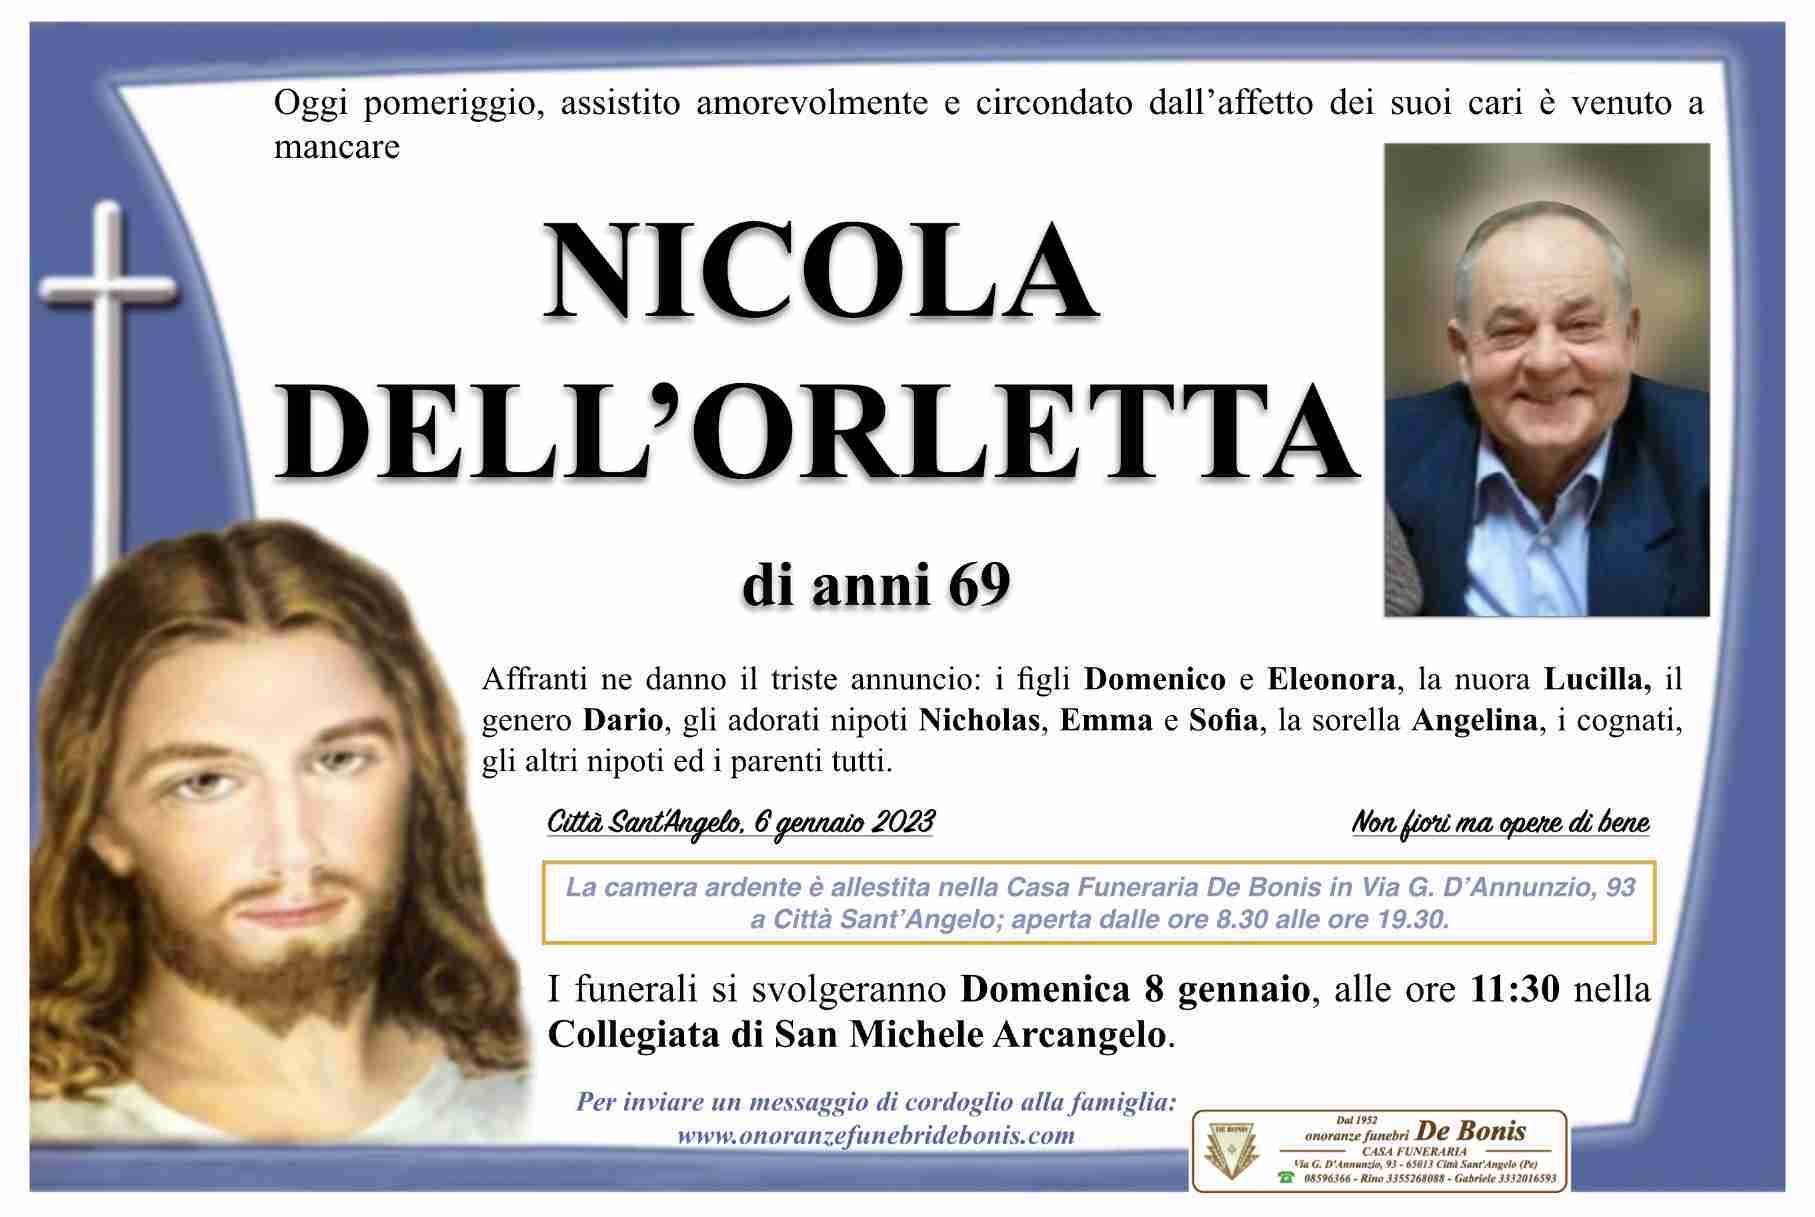 Nicola Dell'Orletta